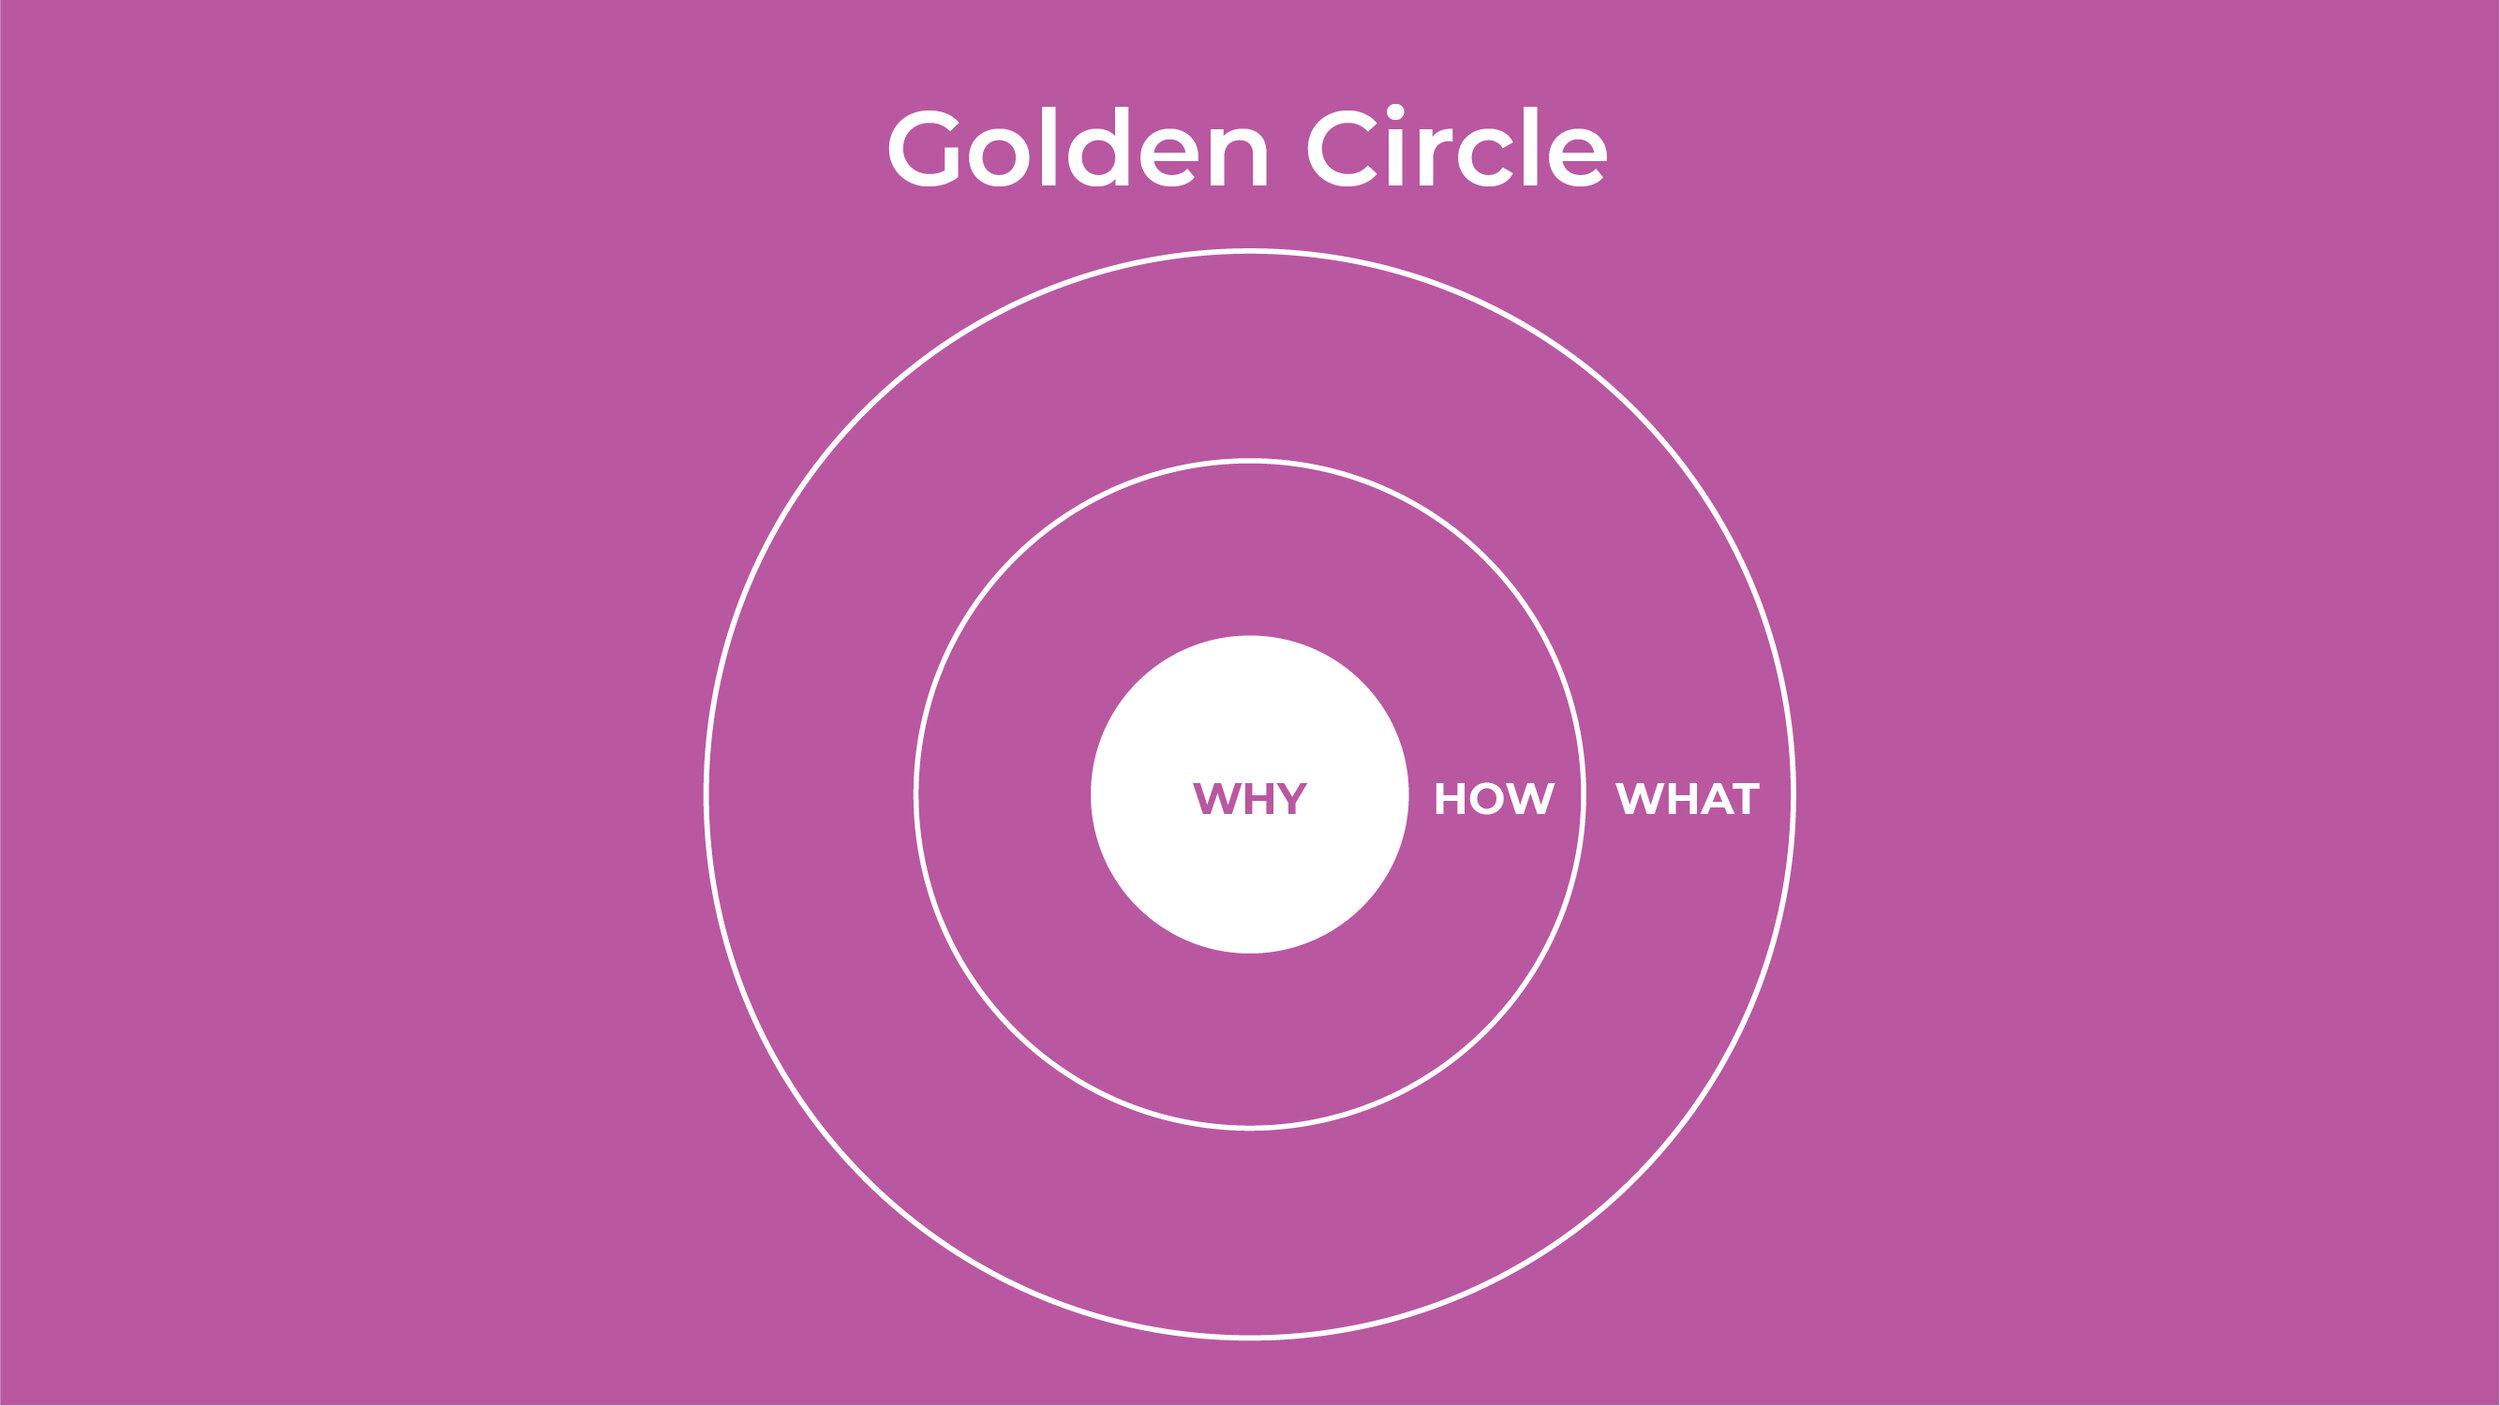 Simon Sinek’s Golden Circle Framework